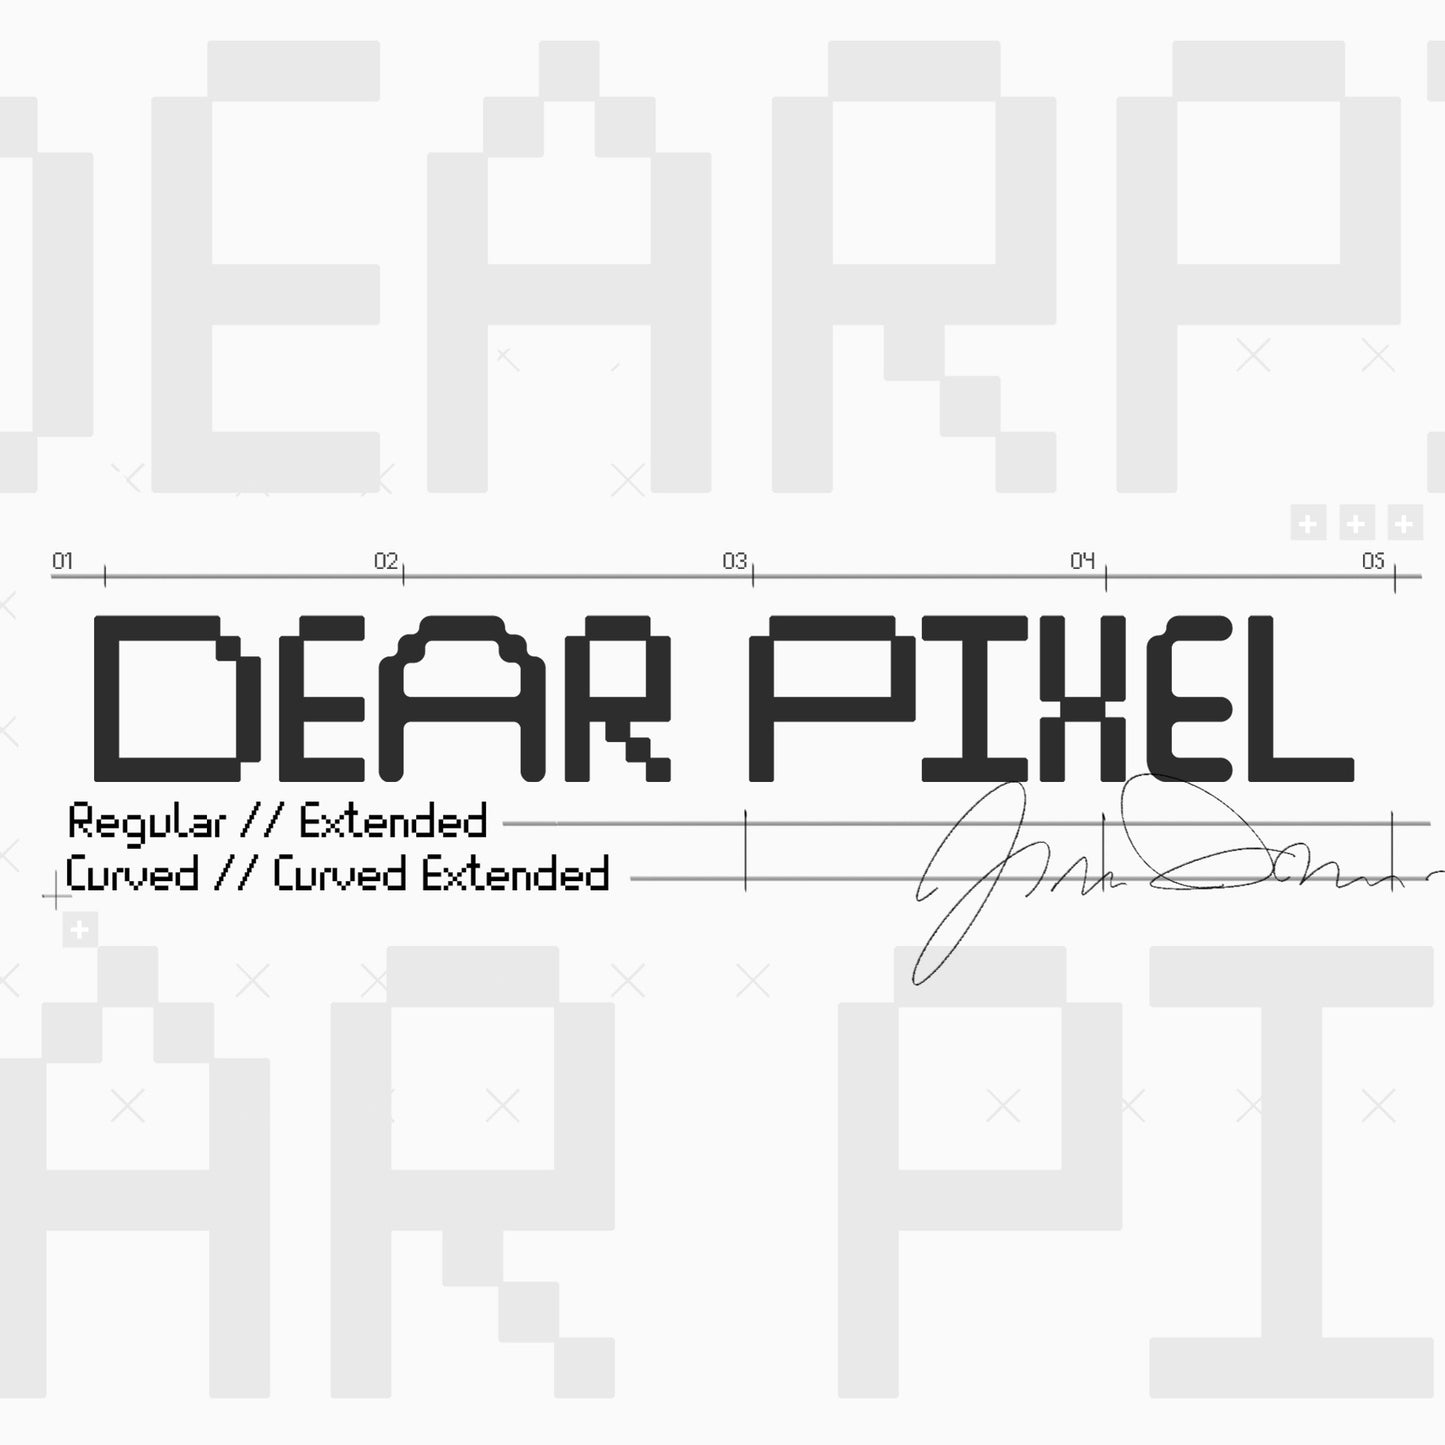 Dear Pixel